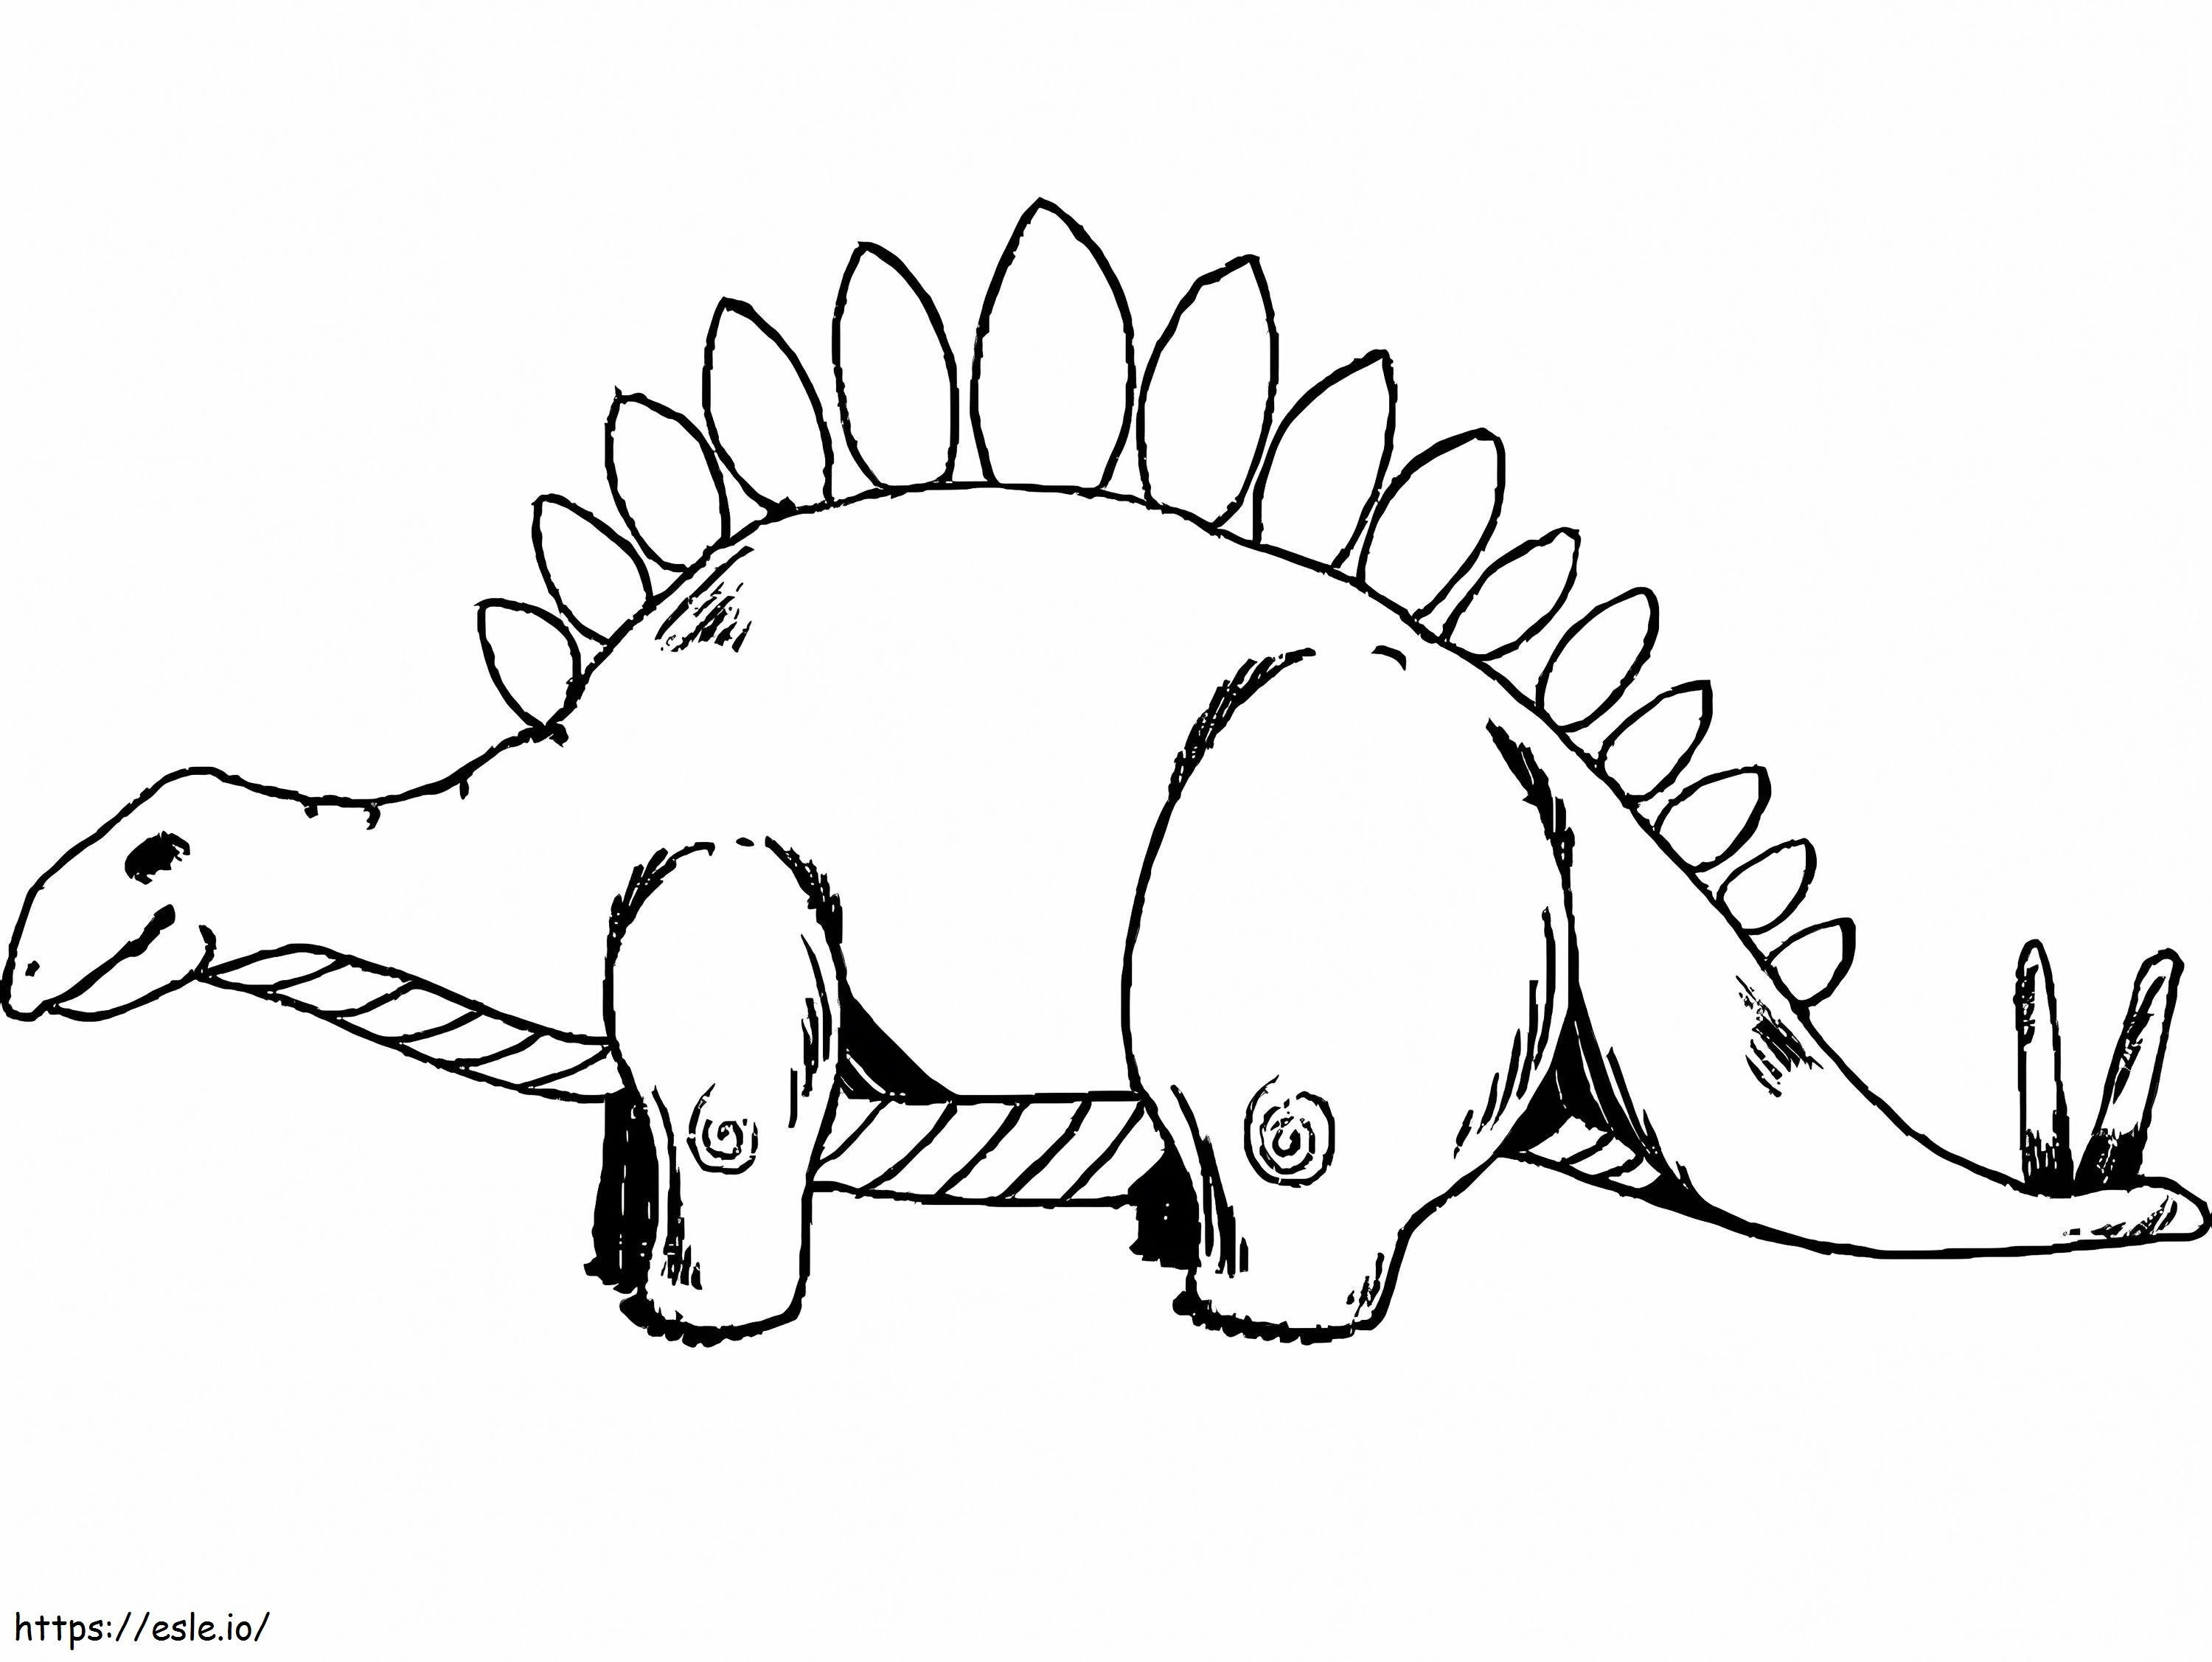 Stegosauro 4 da colorare